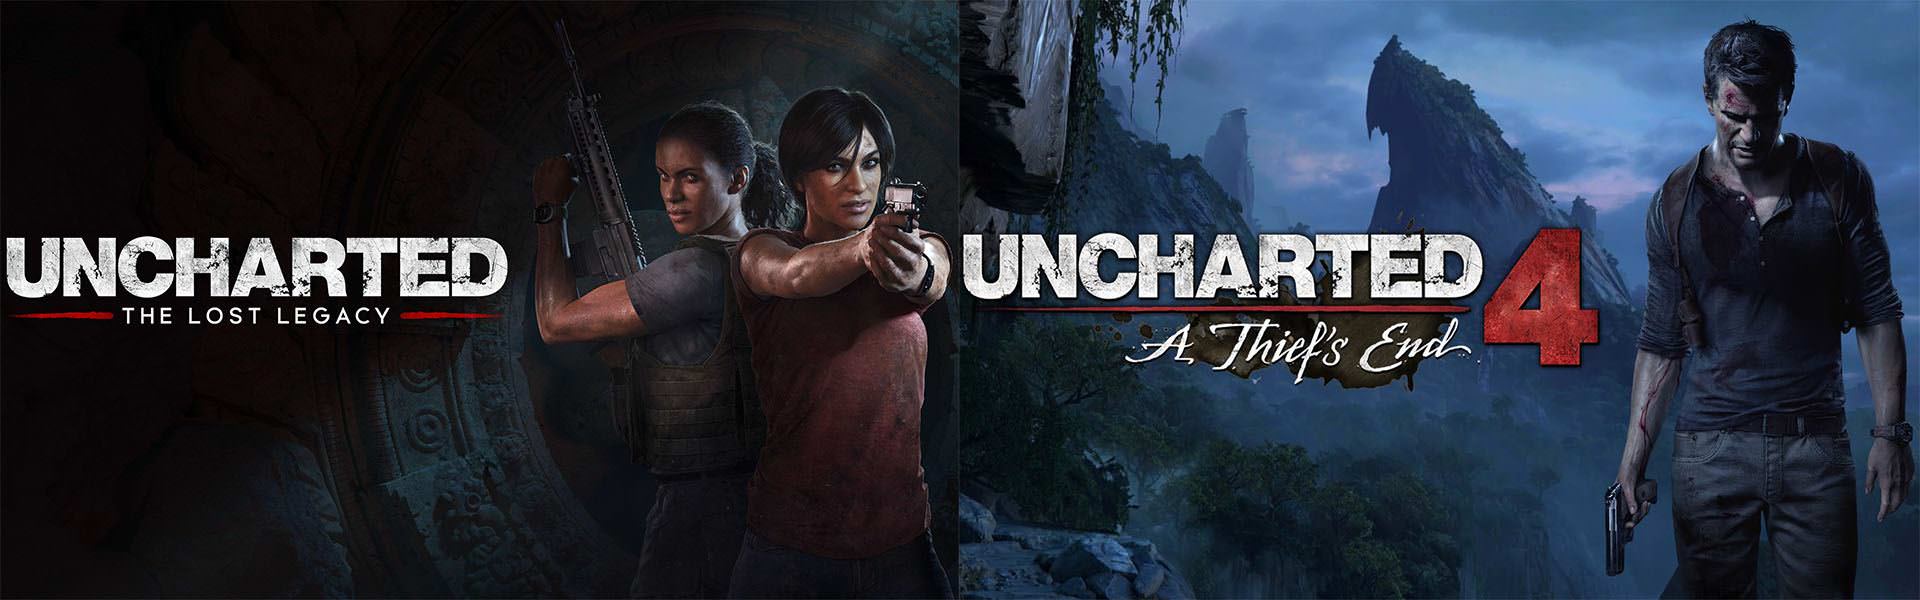 نیتن دریک، کلوئی و ندین در بازی Uncharted 4